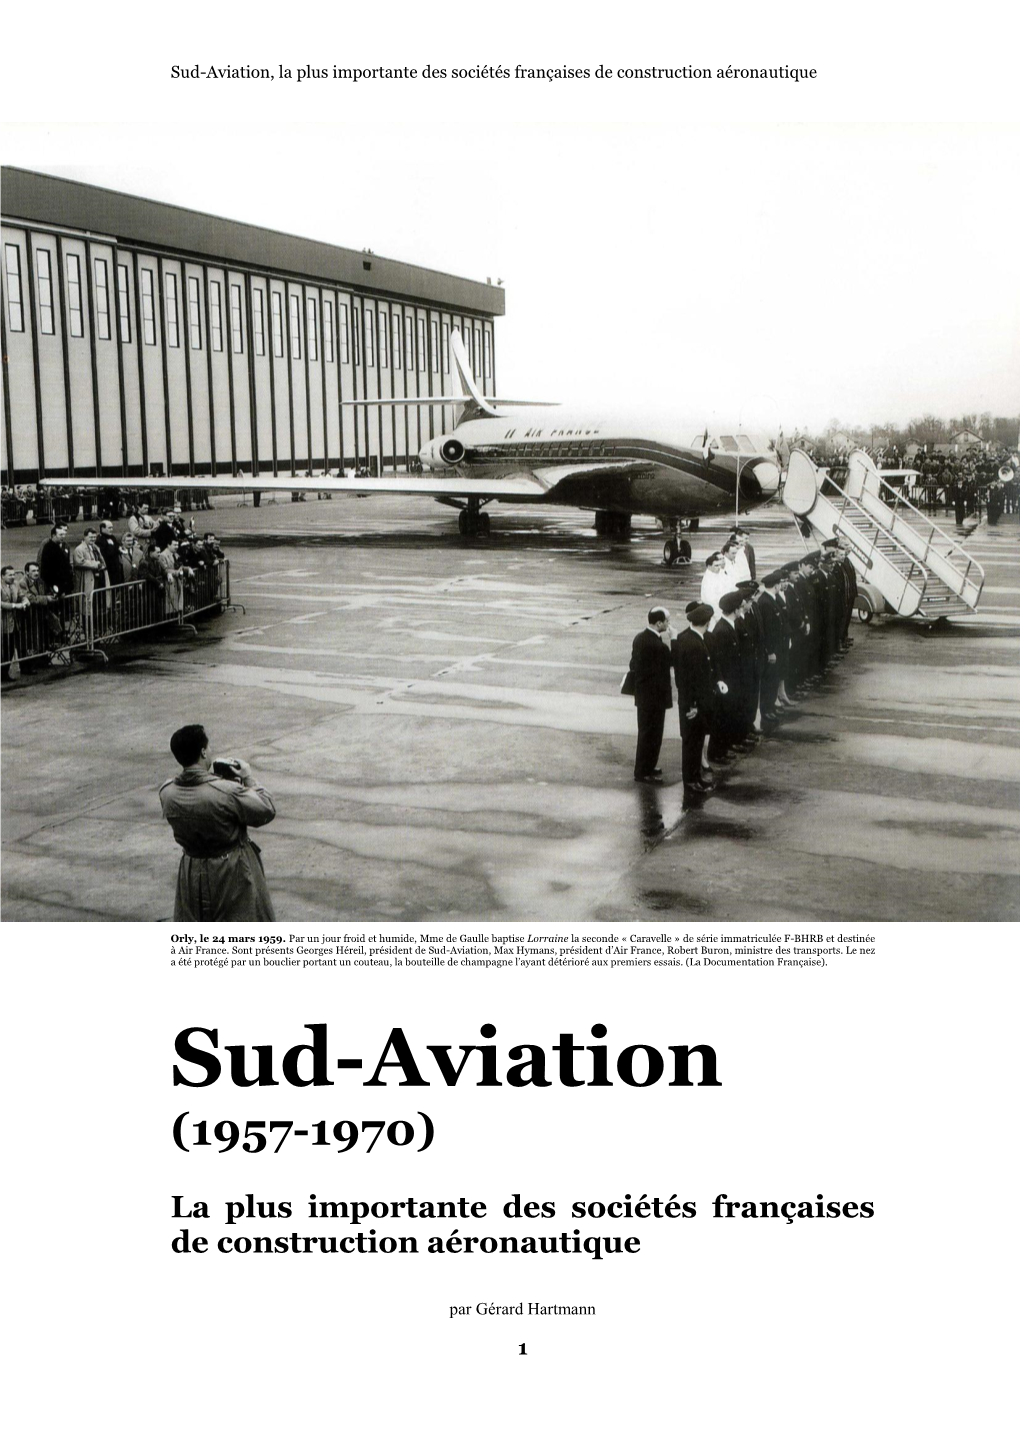 Sud-Aviation, La Plus Importante Des Sociétés Françaises De Construction Aéronautique